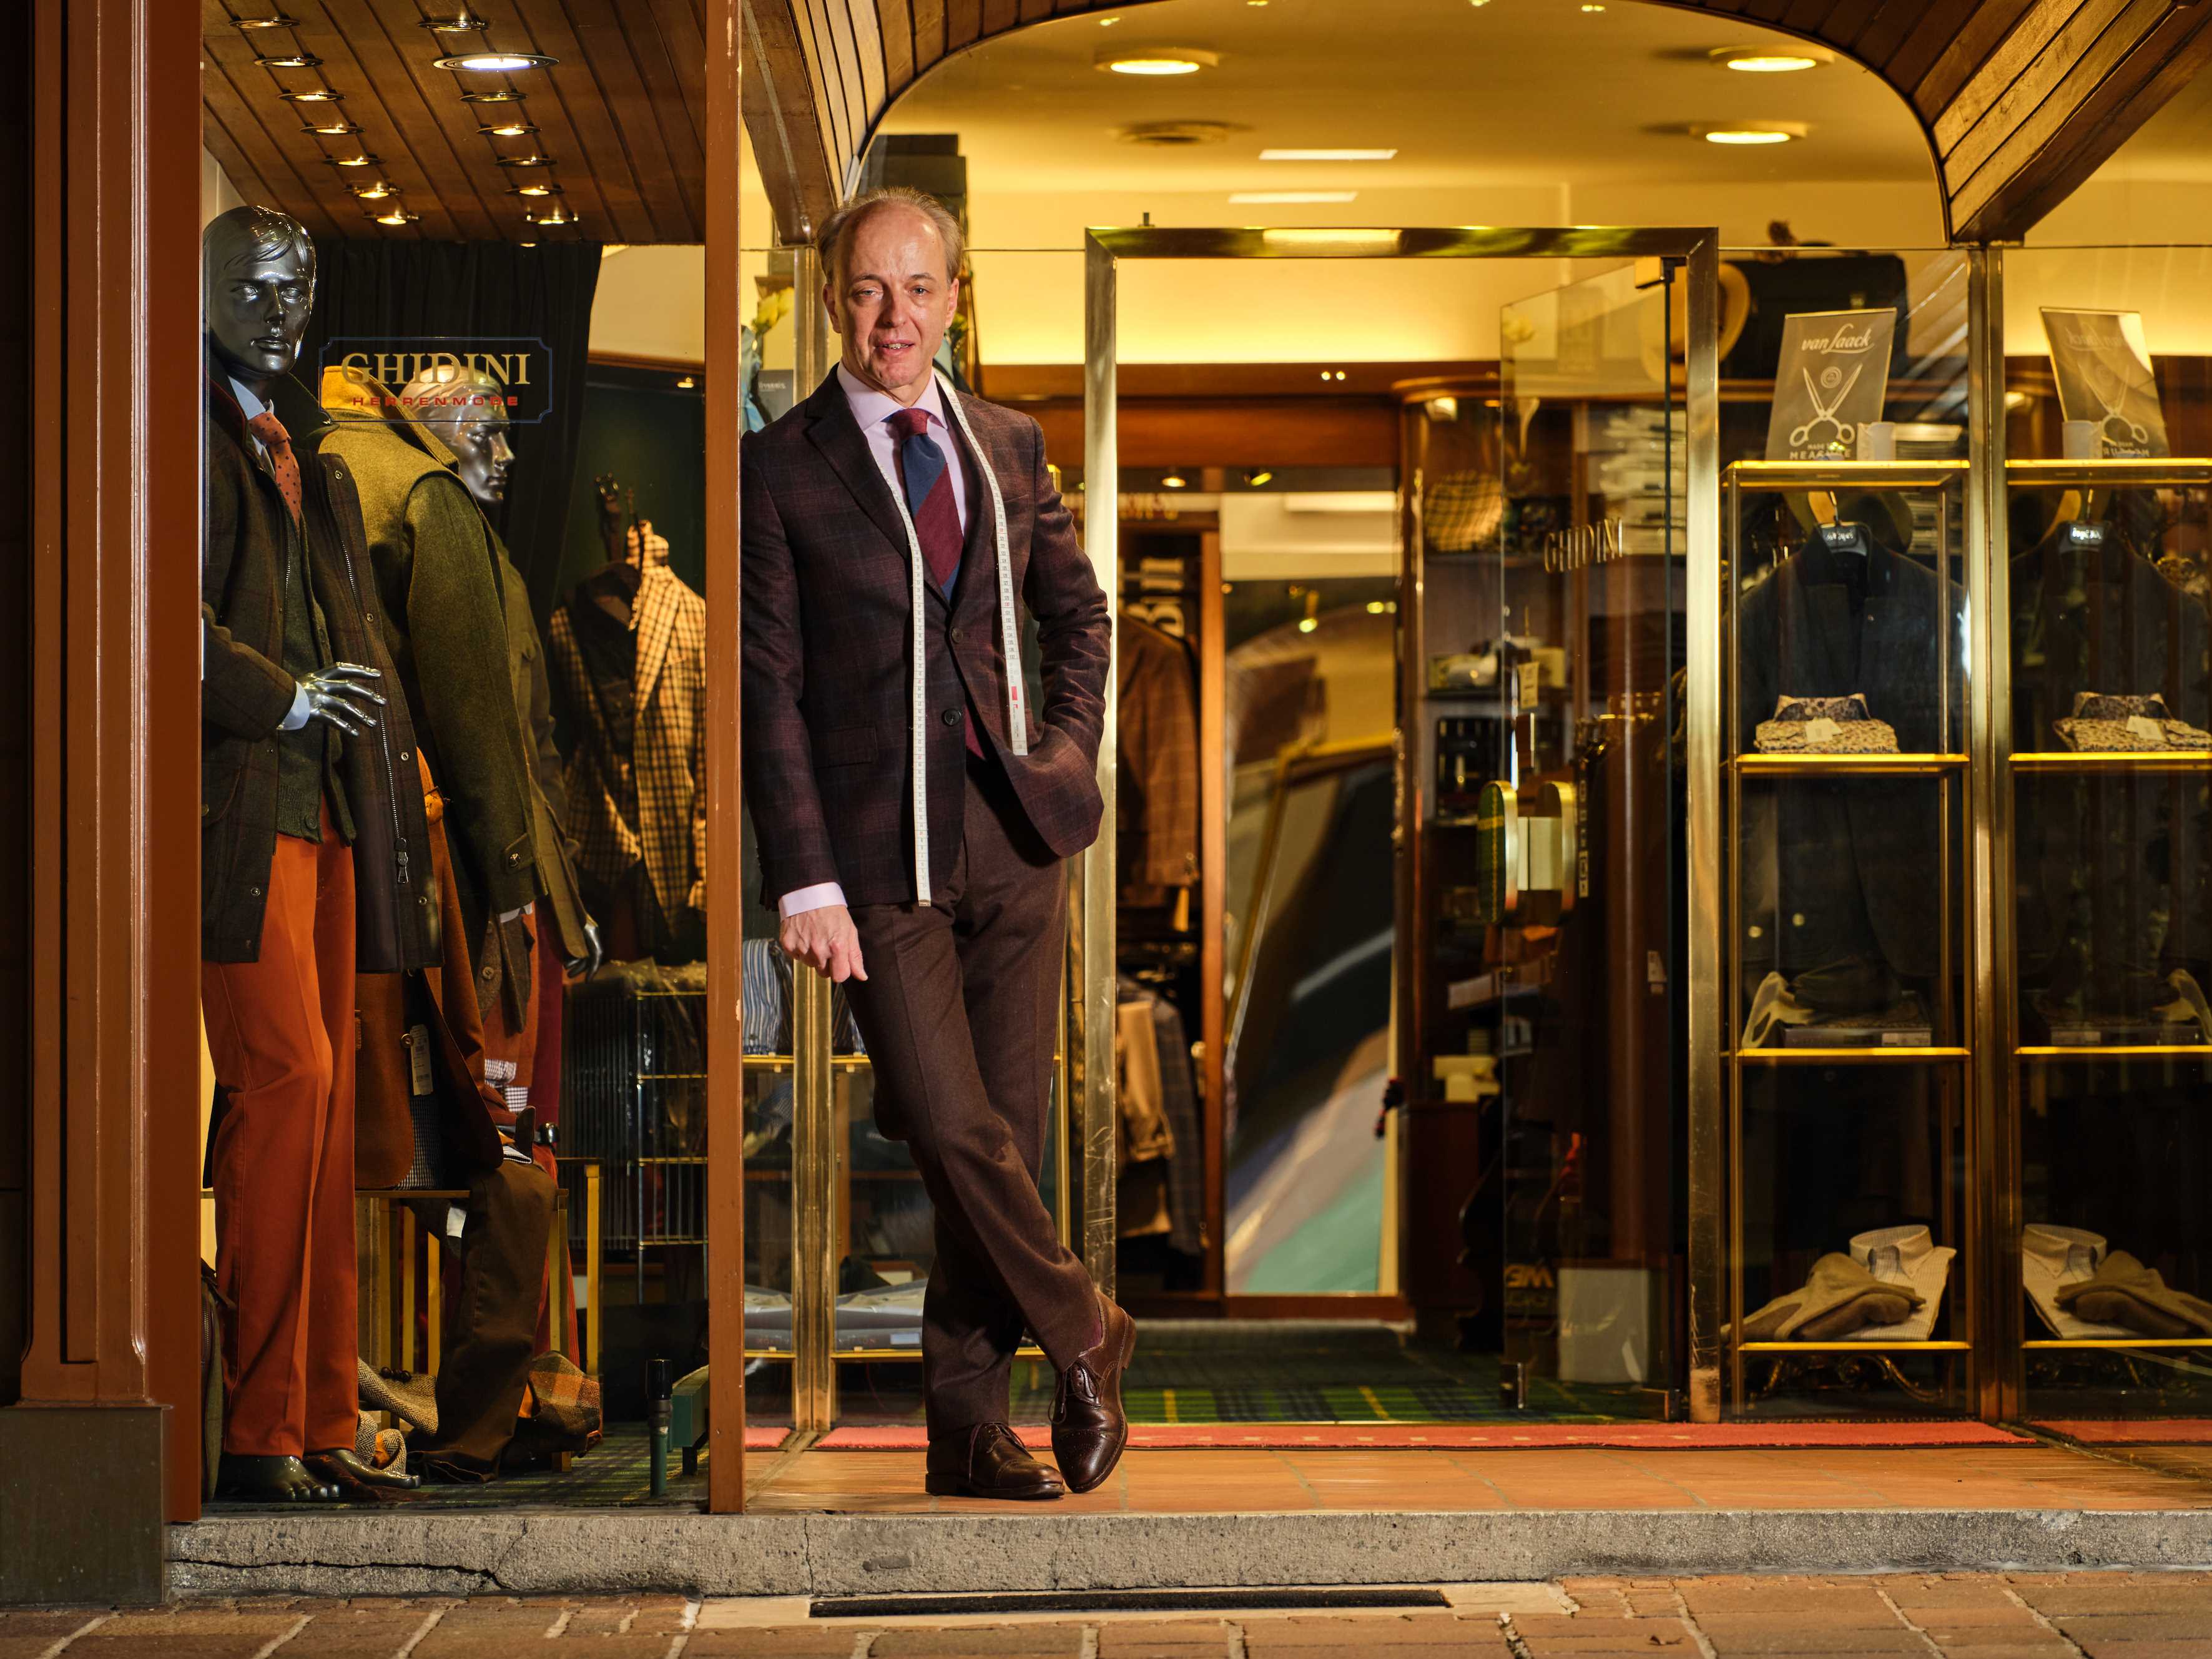 Angelo Ghidini lehnt im schicken Anzug vor dem Eingang zu seiner Herrenausstatter-Boutique